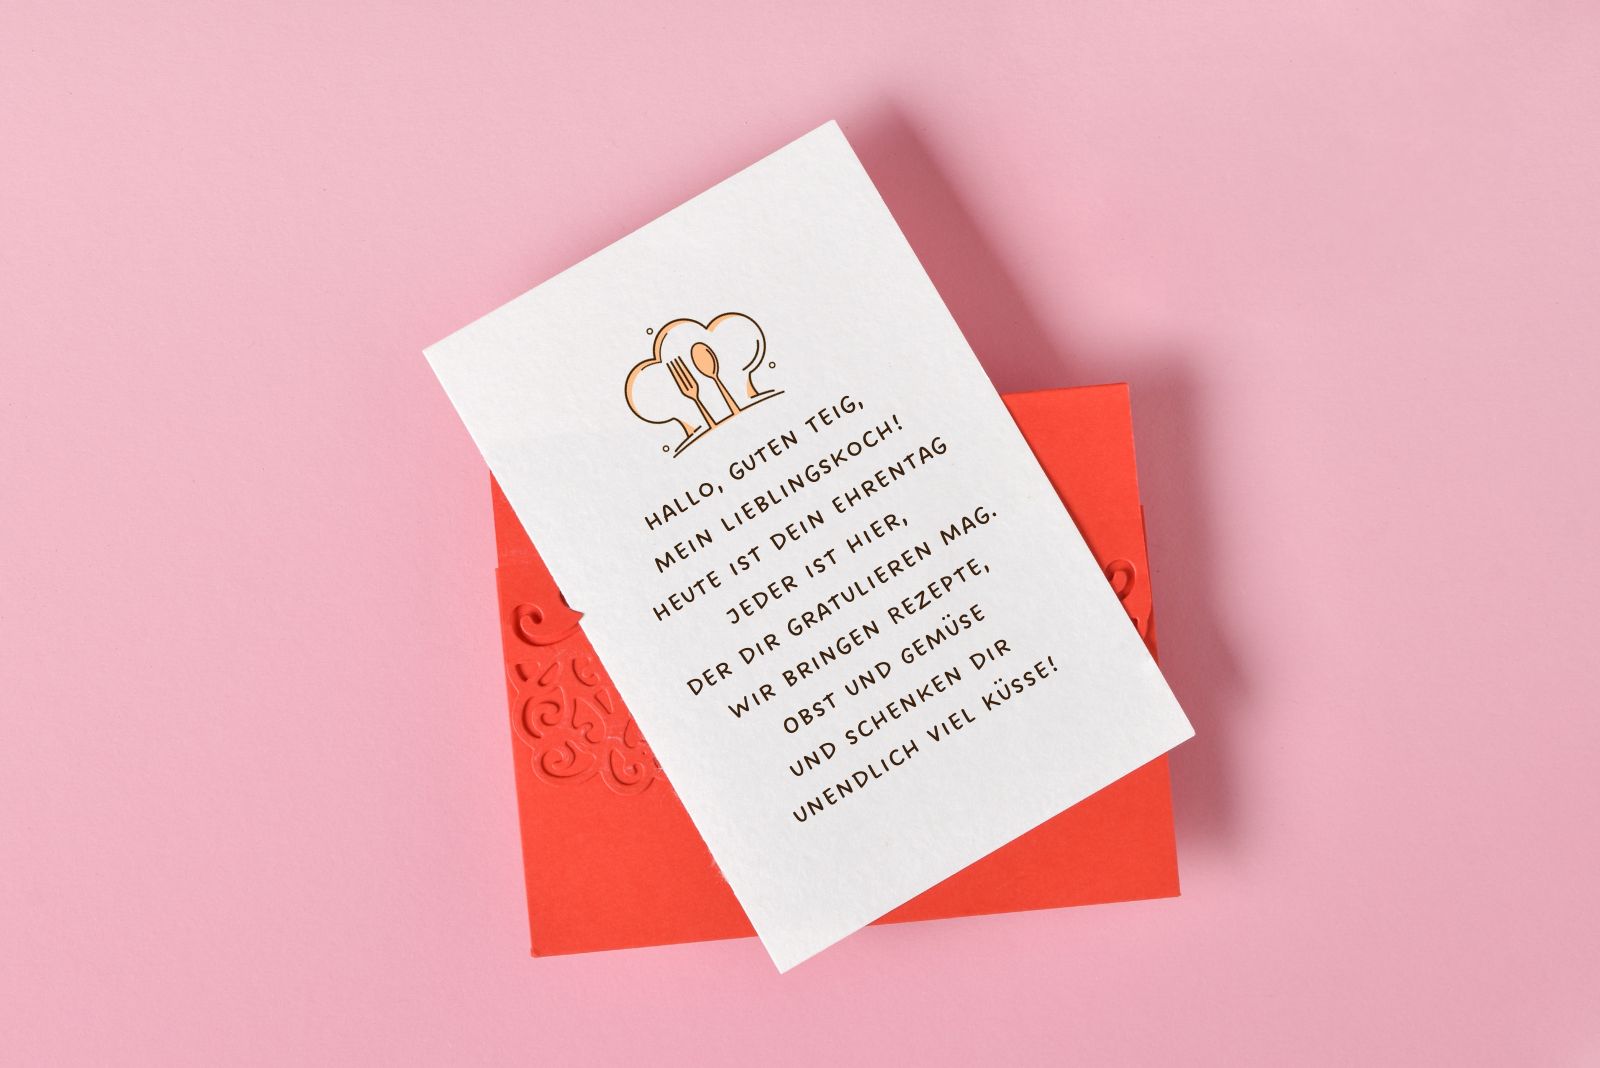 Karte mit einem Geburtstagswunsch für einen Koch auf einem orangefarbenen Umschlag